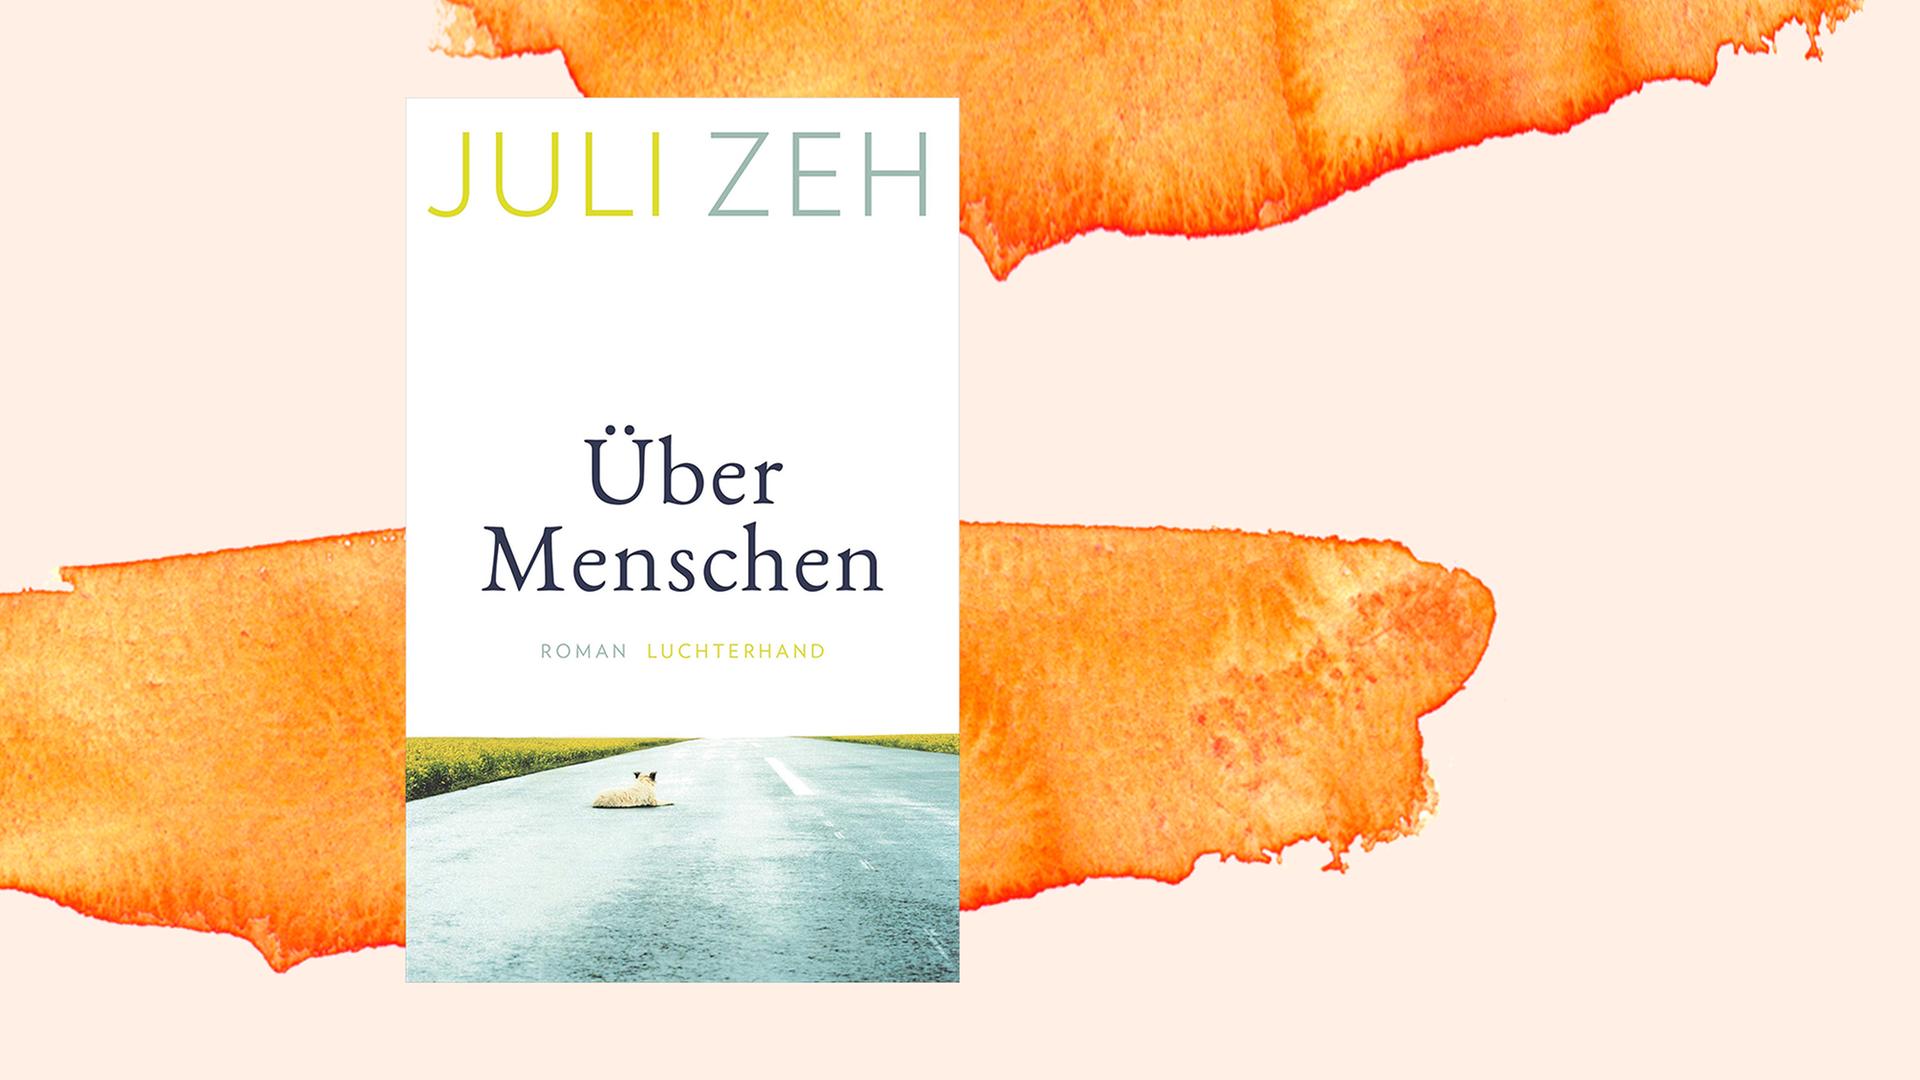 Buchcover "Über Menschen" von Juli Zeh, Luchterhand Verlag. 2021.